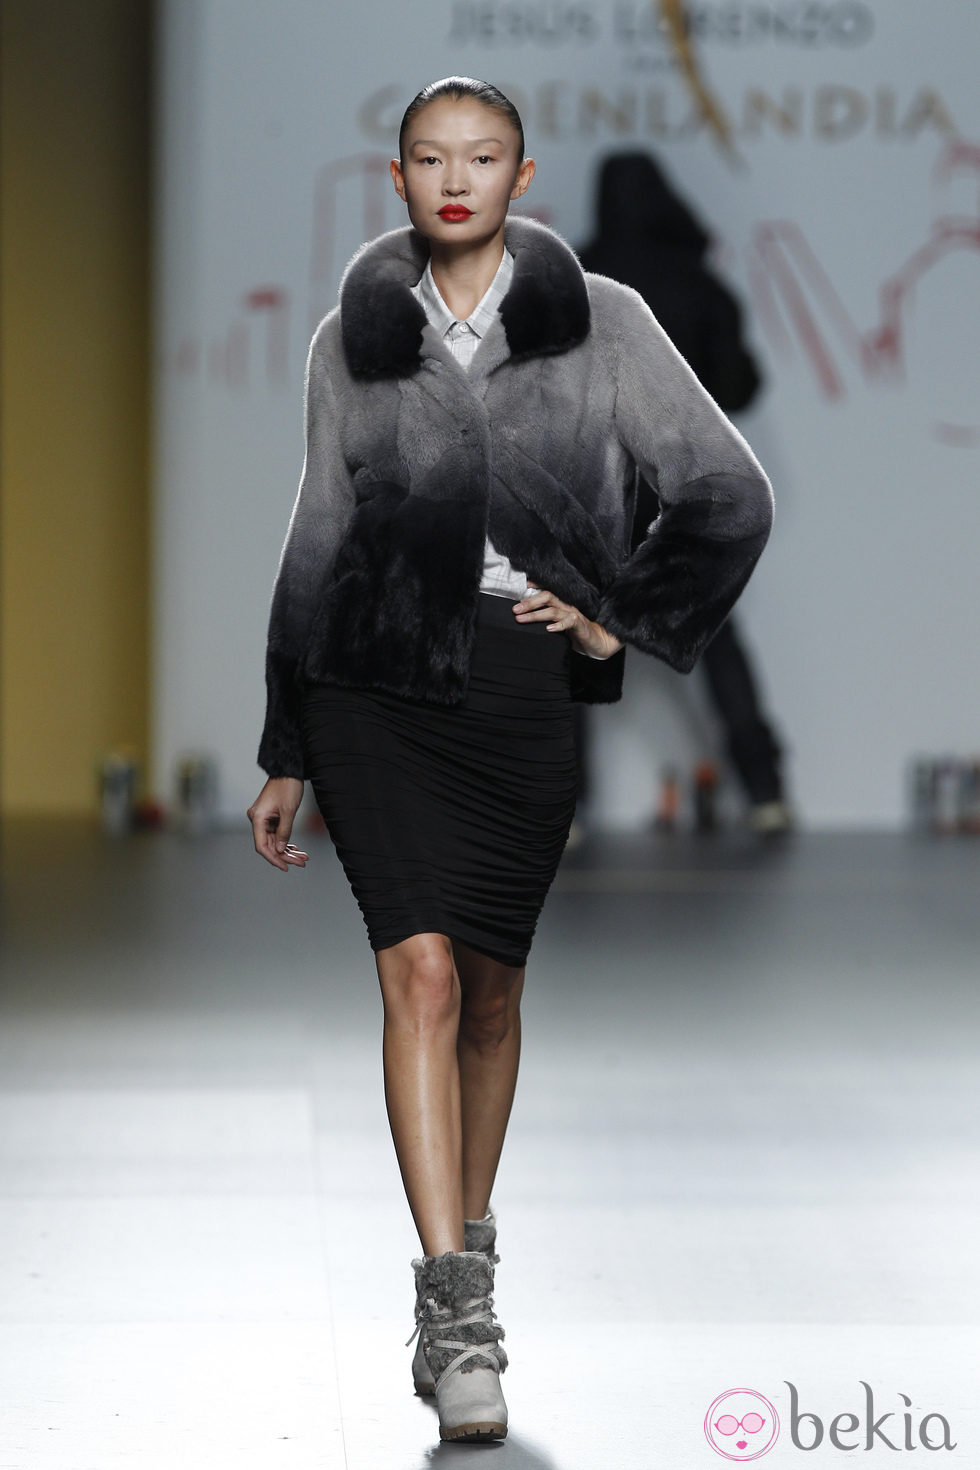 Abrigo en tono grisáceo y falda negra de Jesús Lorenzo en Madrid Fashion Week